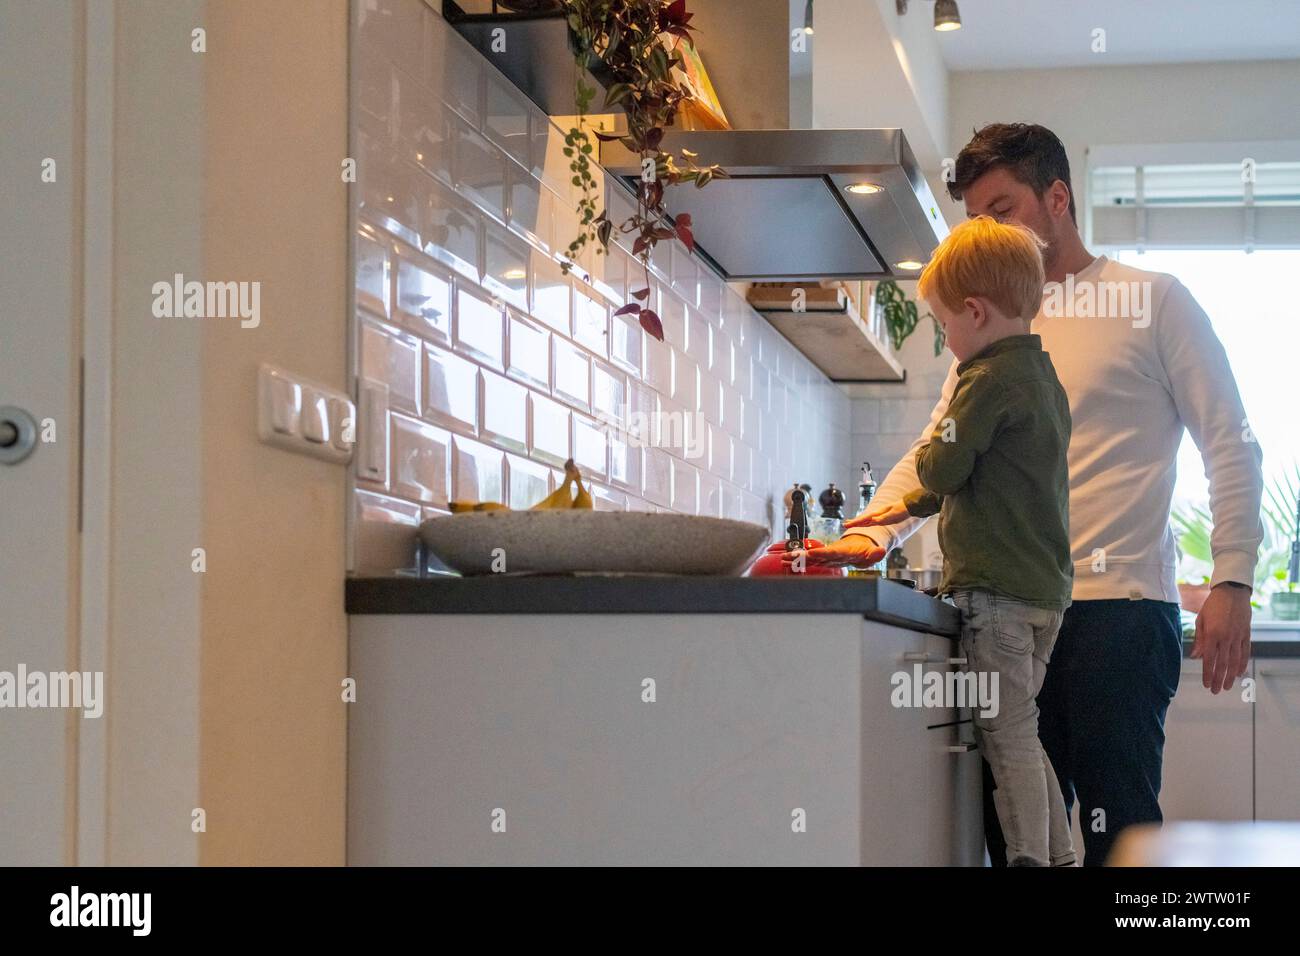 Un padre e un figlio che si legano alle attività di cucina. Foto Stock